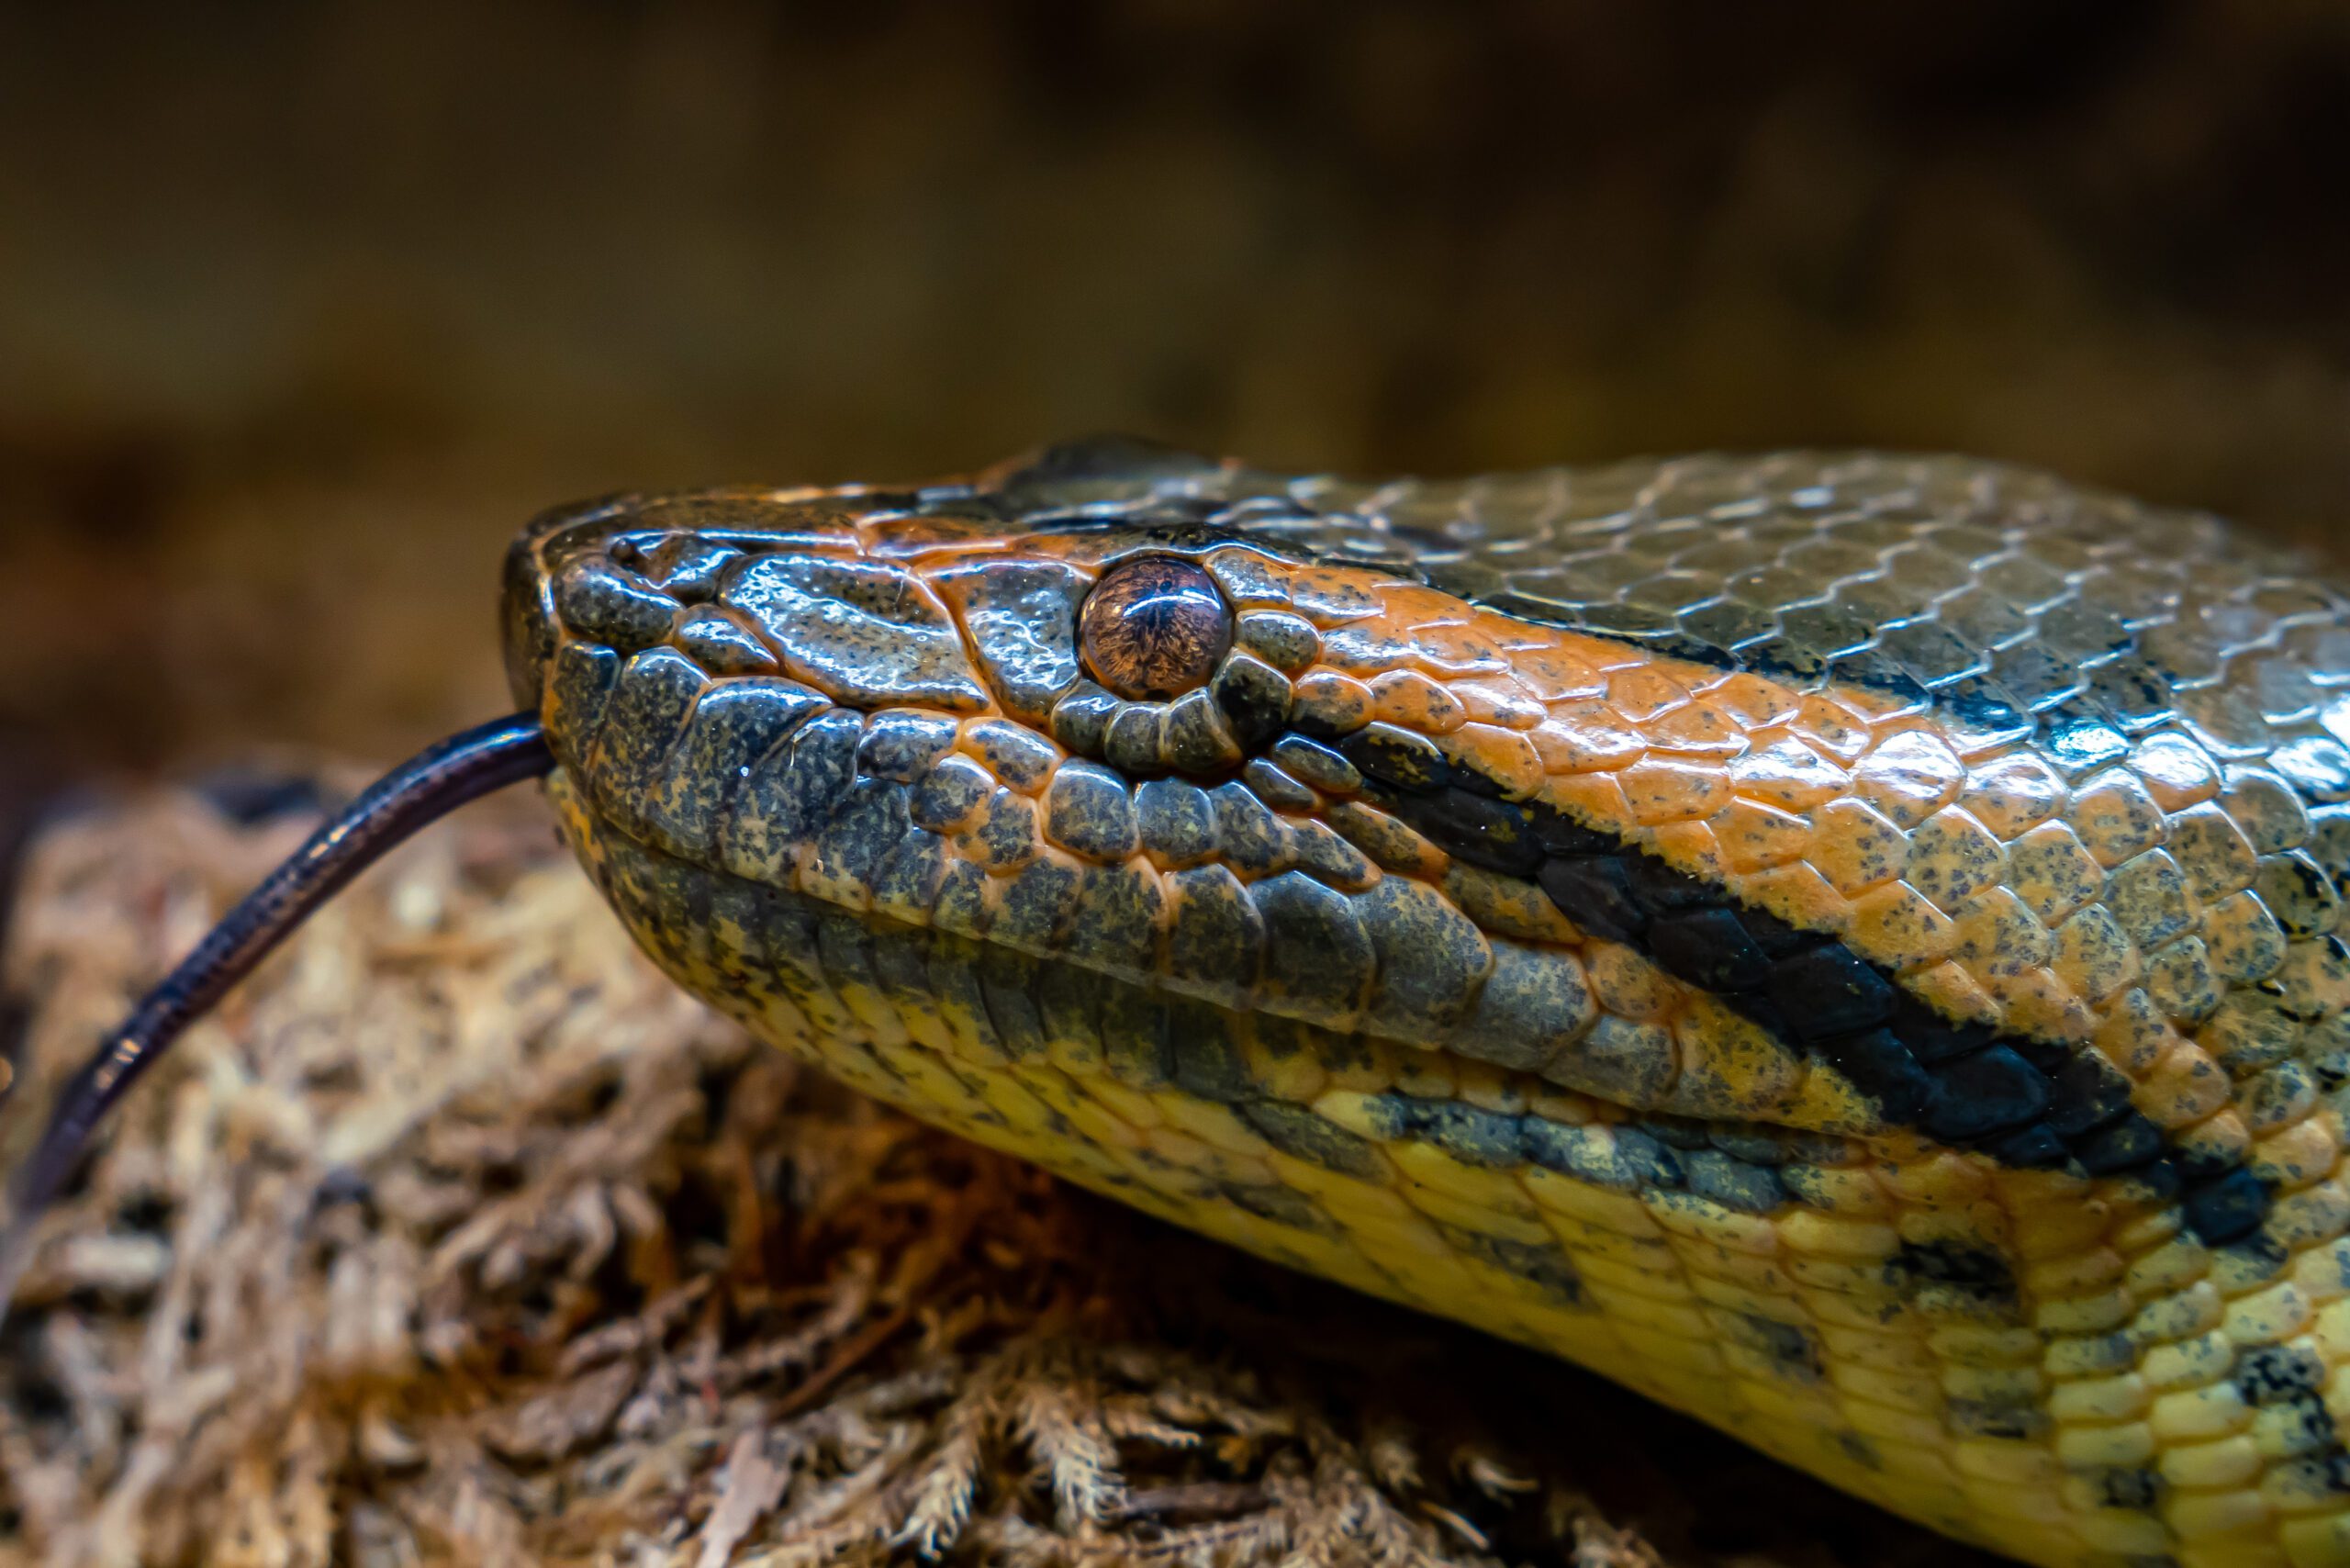 largest anaconda in captivity